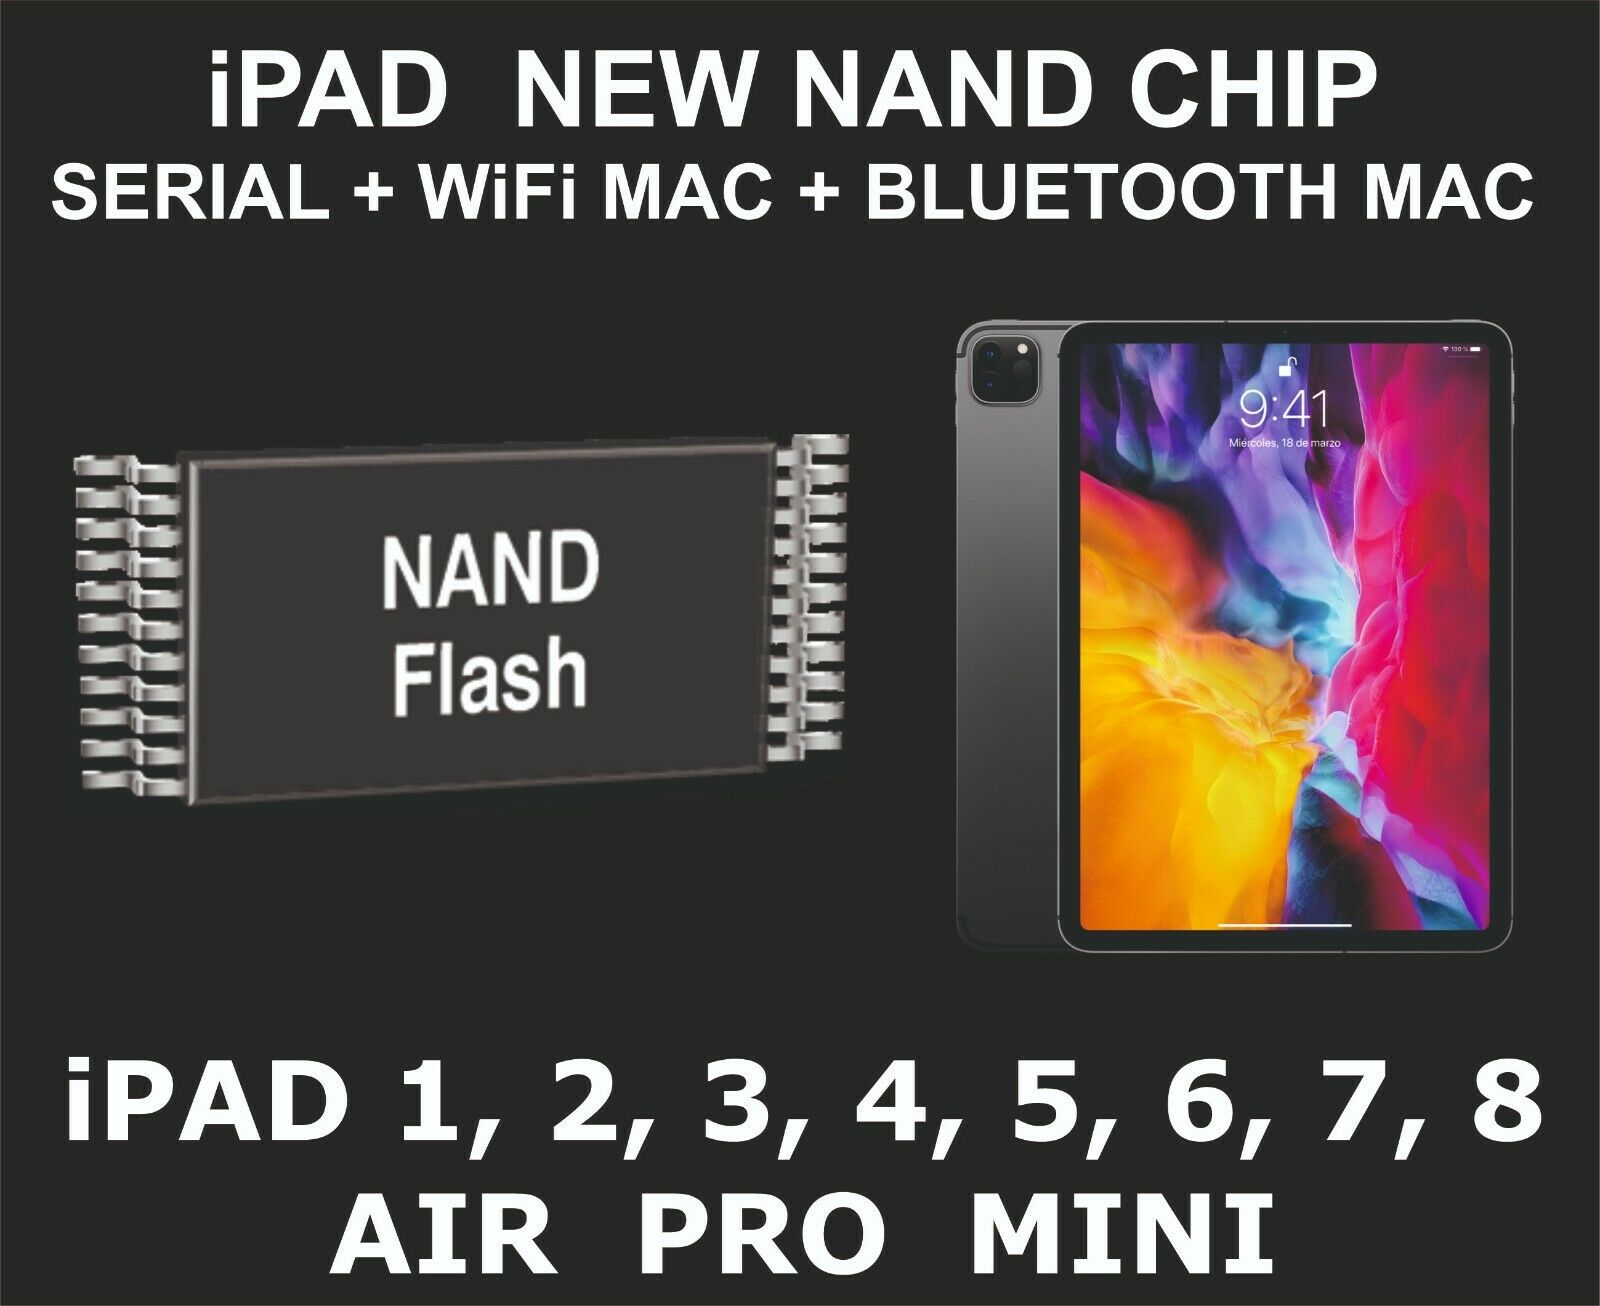 New Nand Chip Data, Serial Number, Wifi Mac, Bluetooth Mac, Ipad A7 Cpu